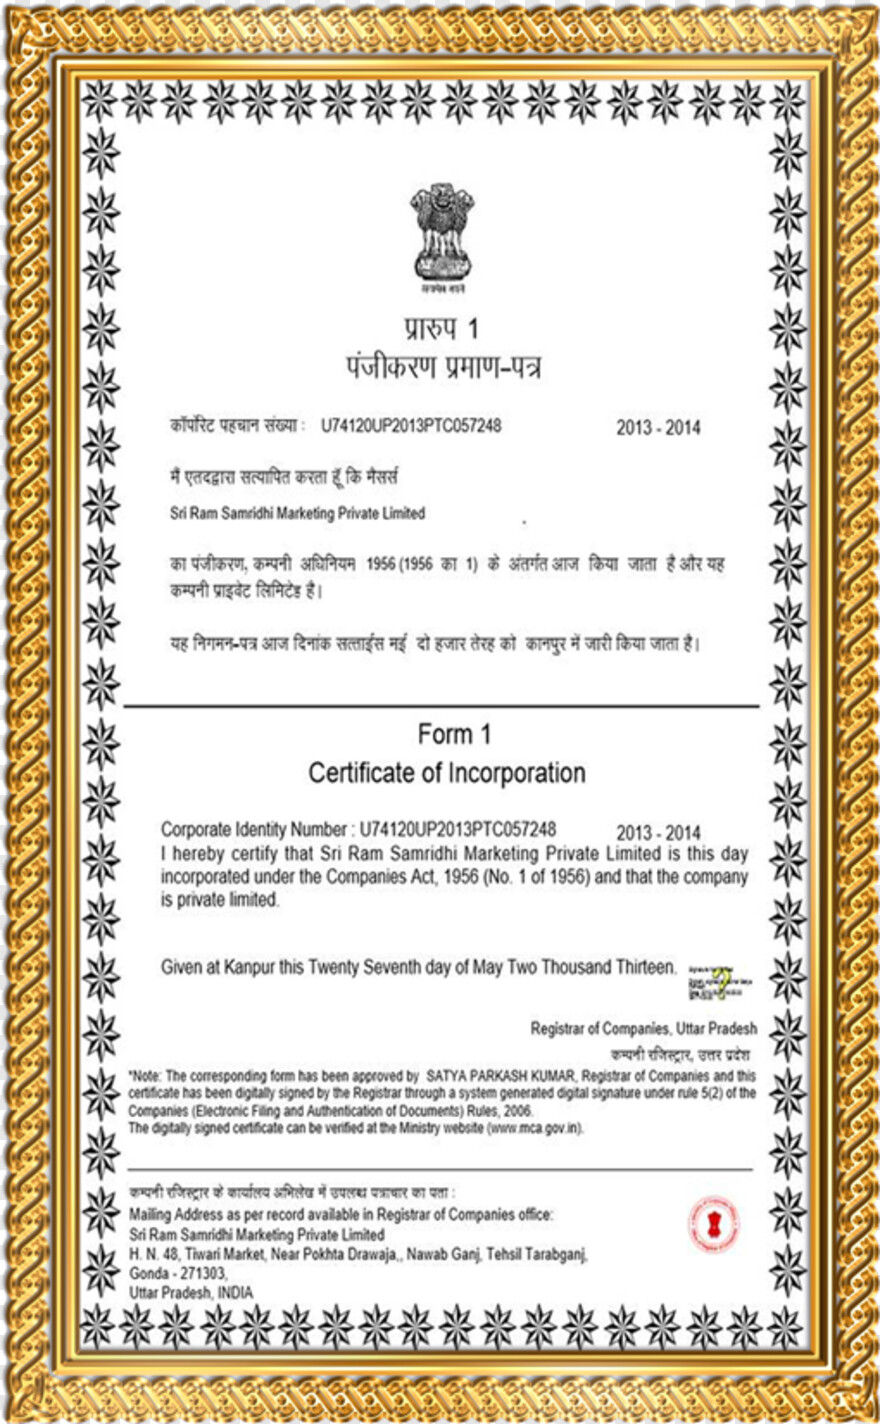  Certificate Seal, Certificate Border, Certificate, India Globe, Flag Of India, India Images